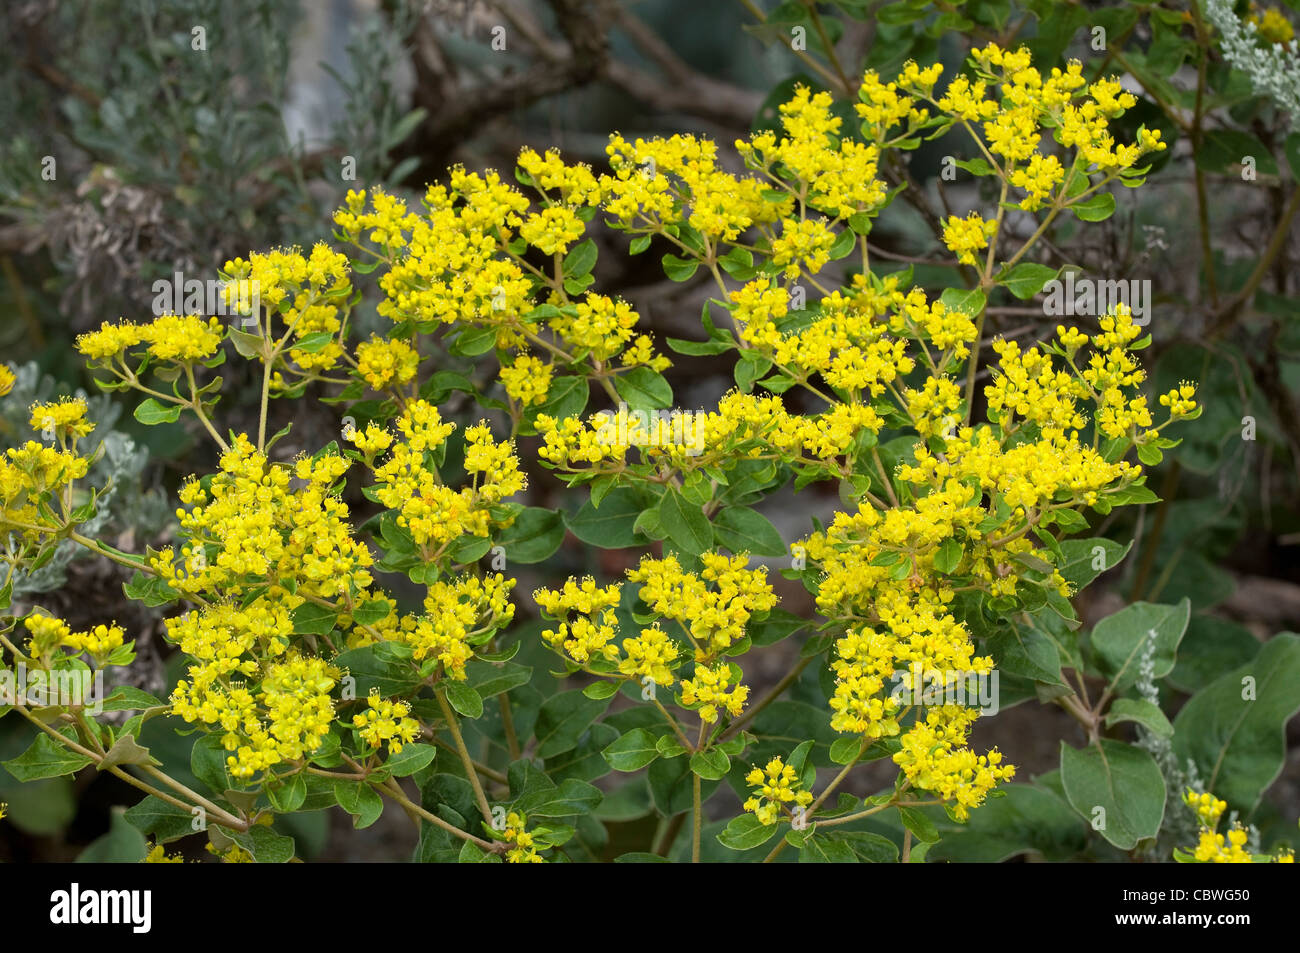 Shale sterile del grano saraceno, giallo del grano saraceno (Eriogonum allenii), la fioritura delle piante. Foto Stock